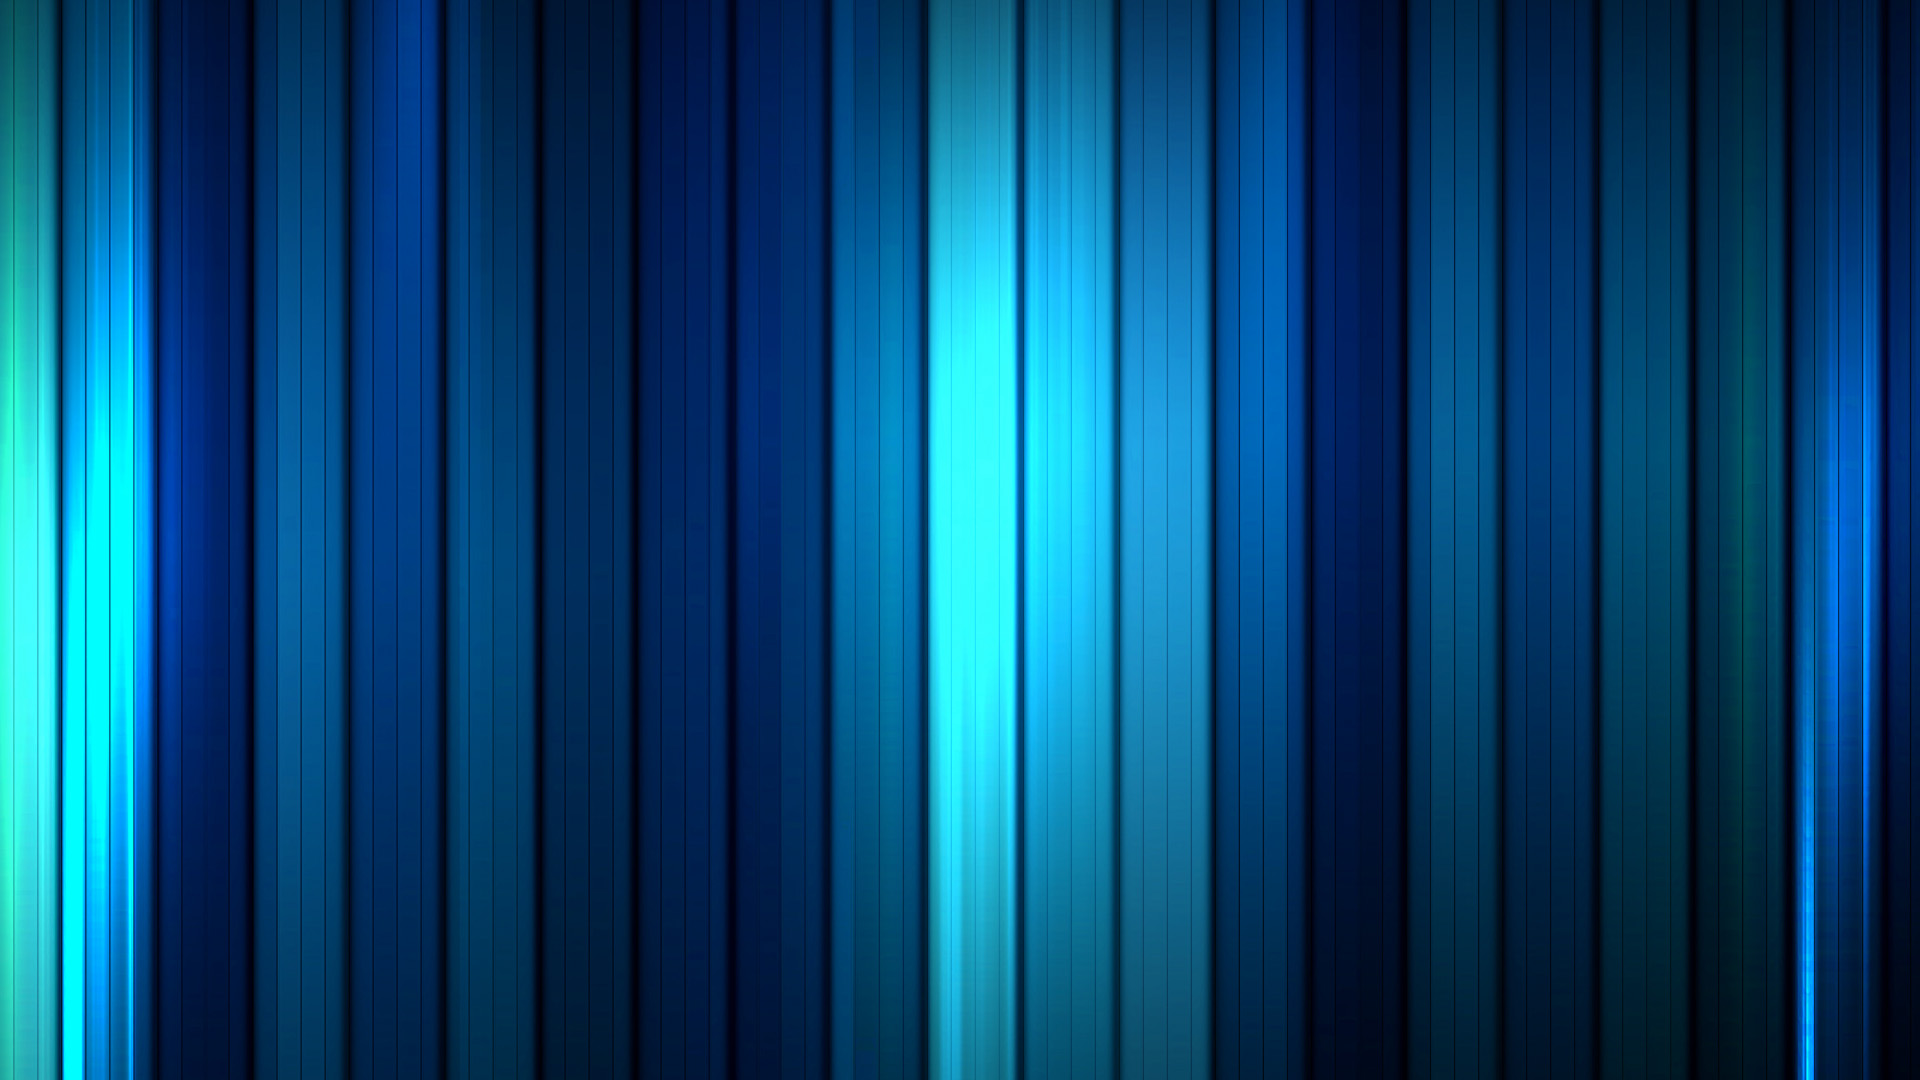 fond d'écran images hd,bleu,bleu cobalt,turquoise,vert,bleu électrique